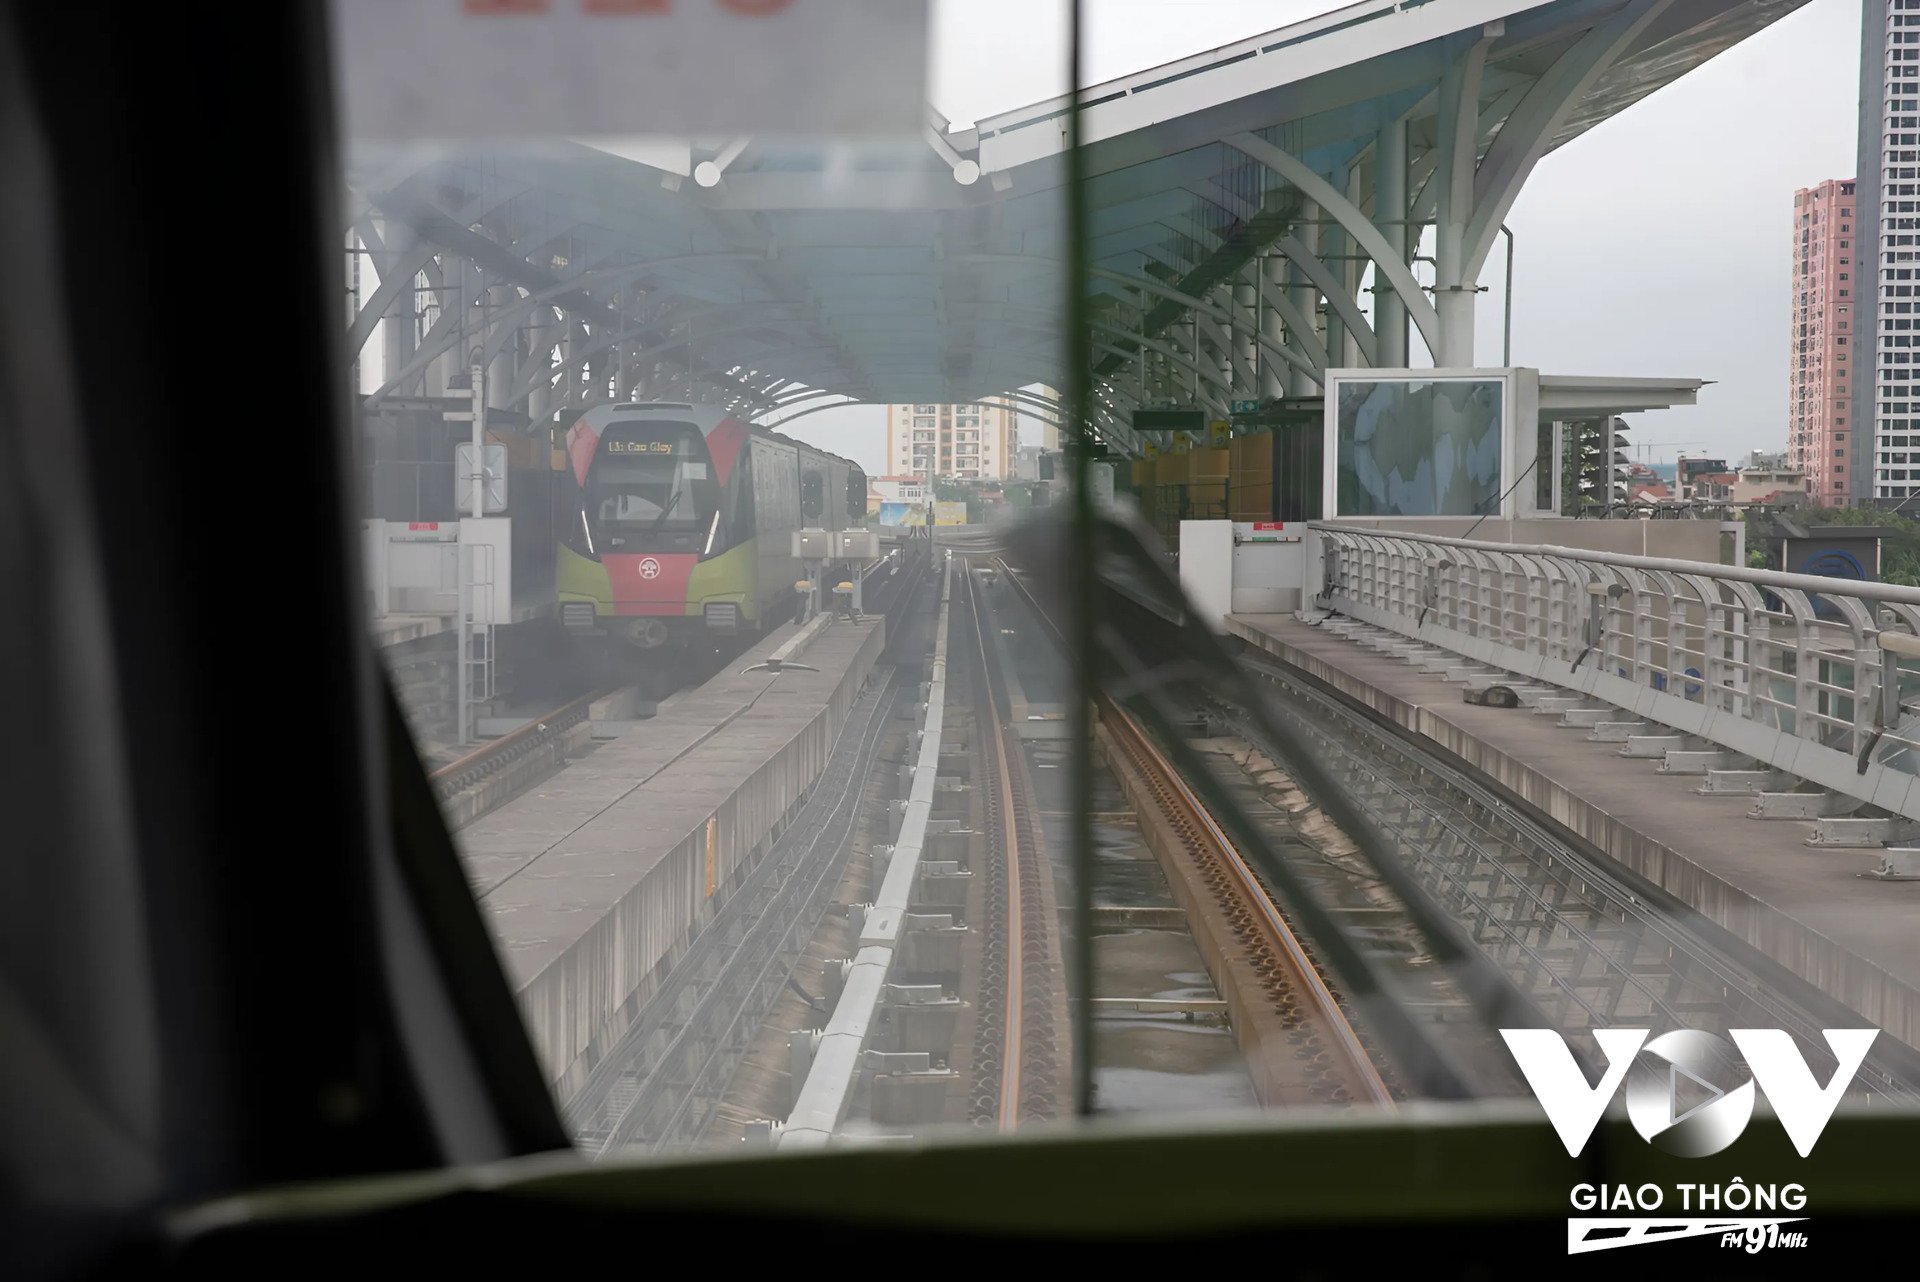 Tuyến đường sắt Nhổn - ga Hà Nội đoạn trên cao đều có 2 đường ray dành cho 2 tàu chạy đồng thời, thay vì chỉ có ở một số nhà ga